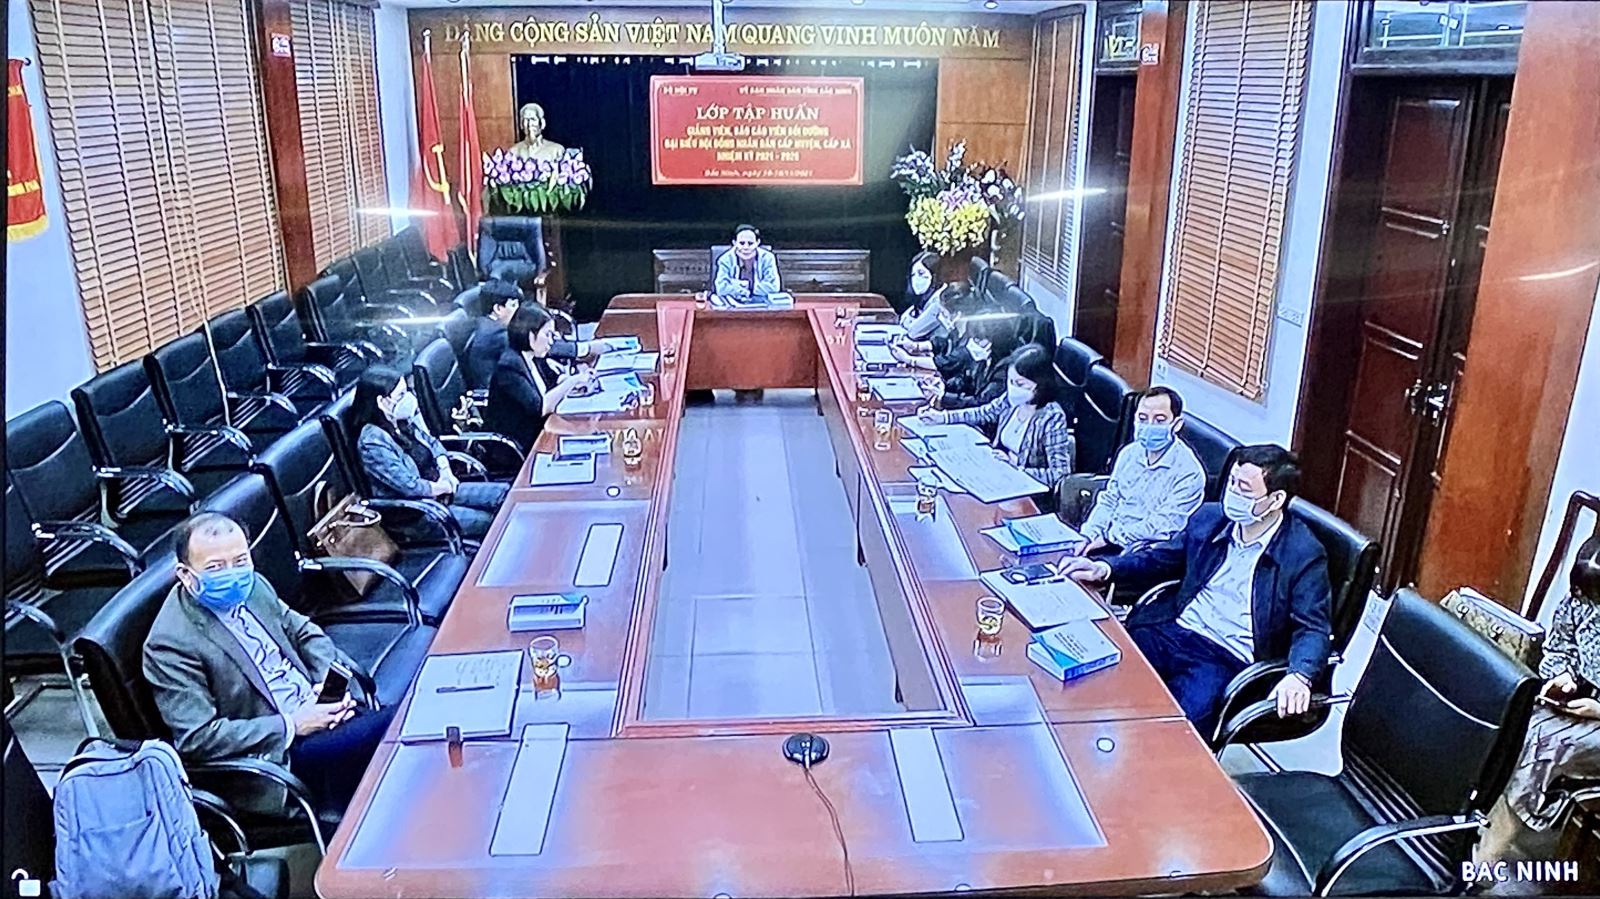  Đại diện tỉnh Bắc Ninh chia sẻ ý kiến qua điểm cầu trưc tuyến